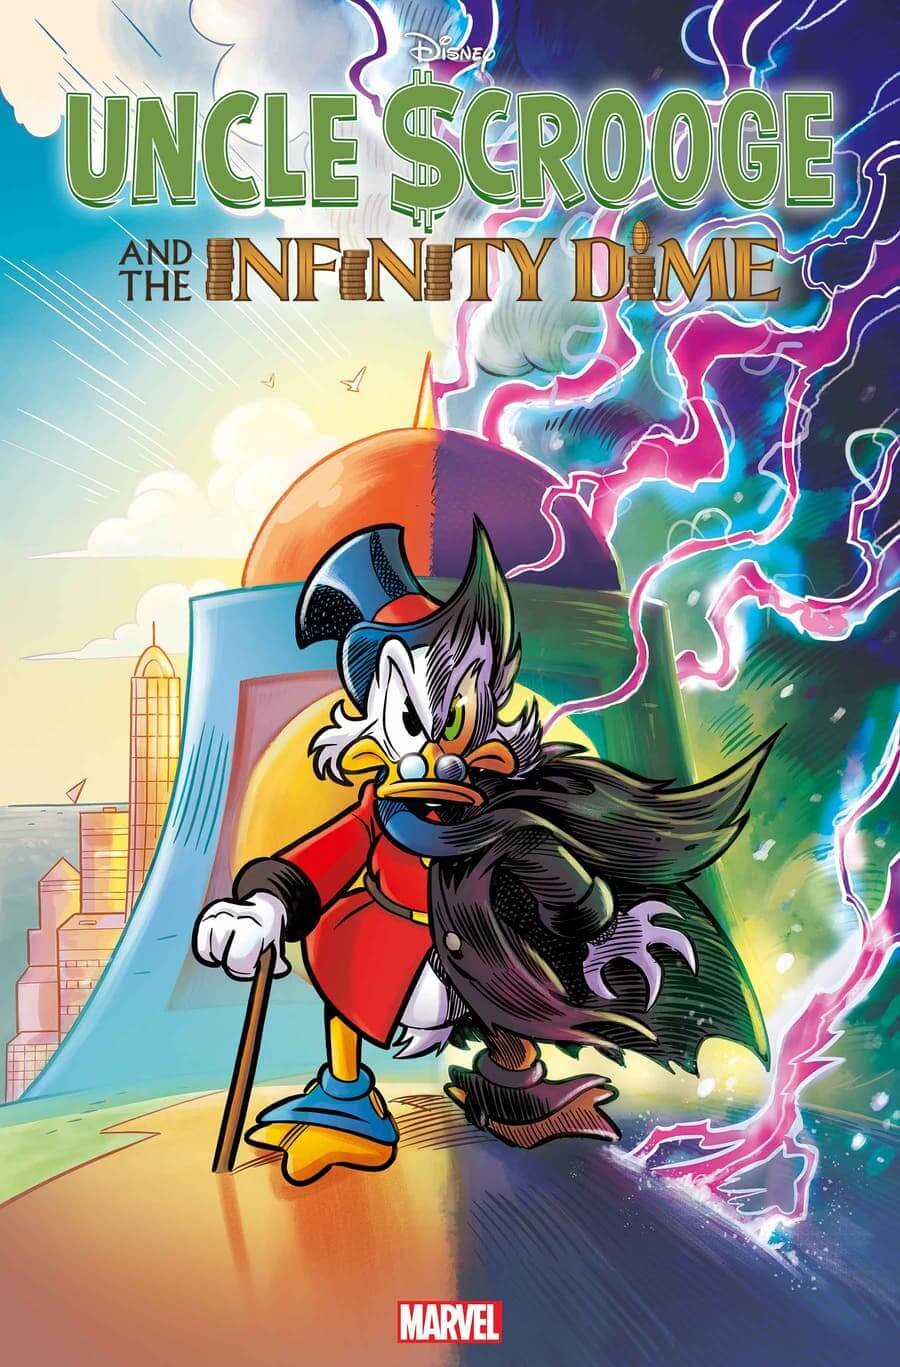 Cover di Uncle $crooge and the Infinity Dime di Lorenzo Pastrovicchio, primo fumetto di Zio Paperone pubblicato dalla Marvel